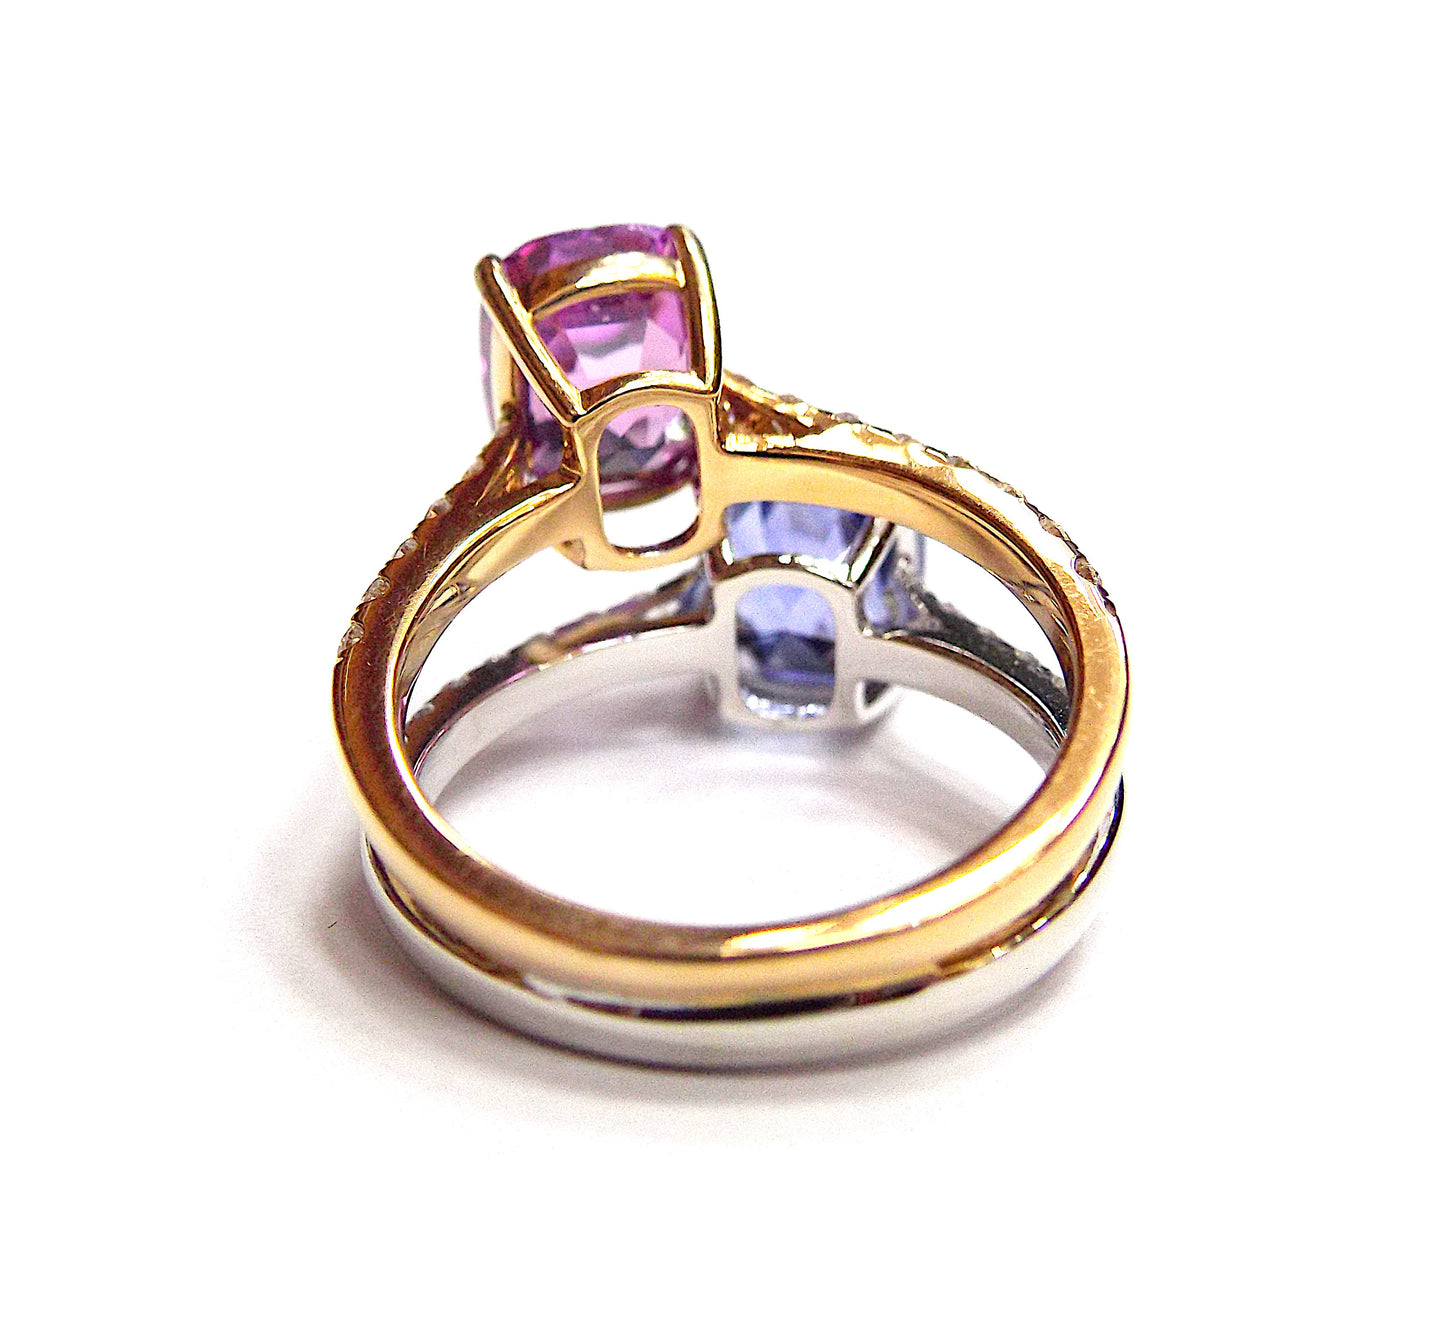 Multi-Colored Sapphire Diamond Ring